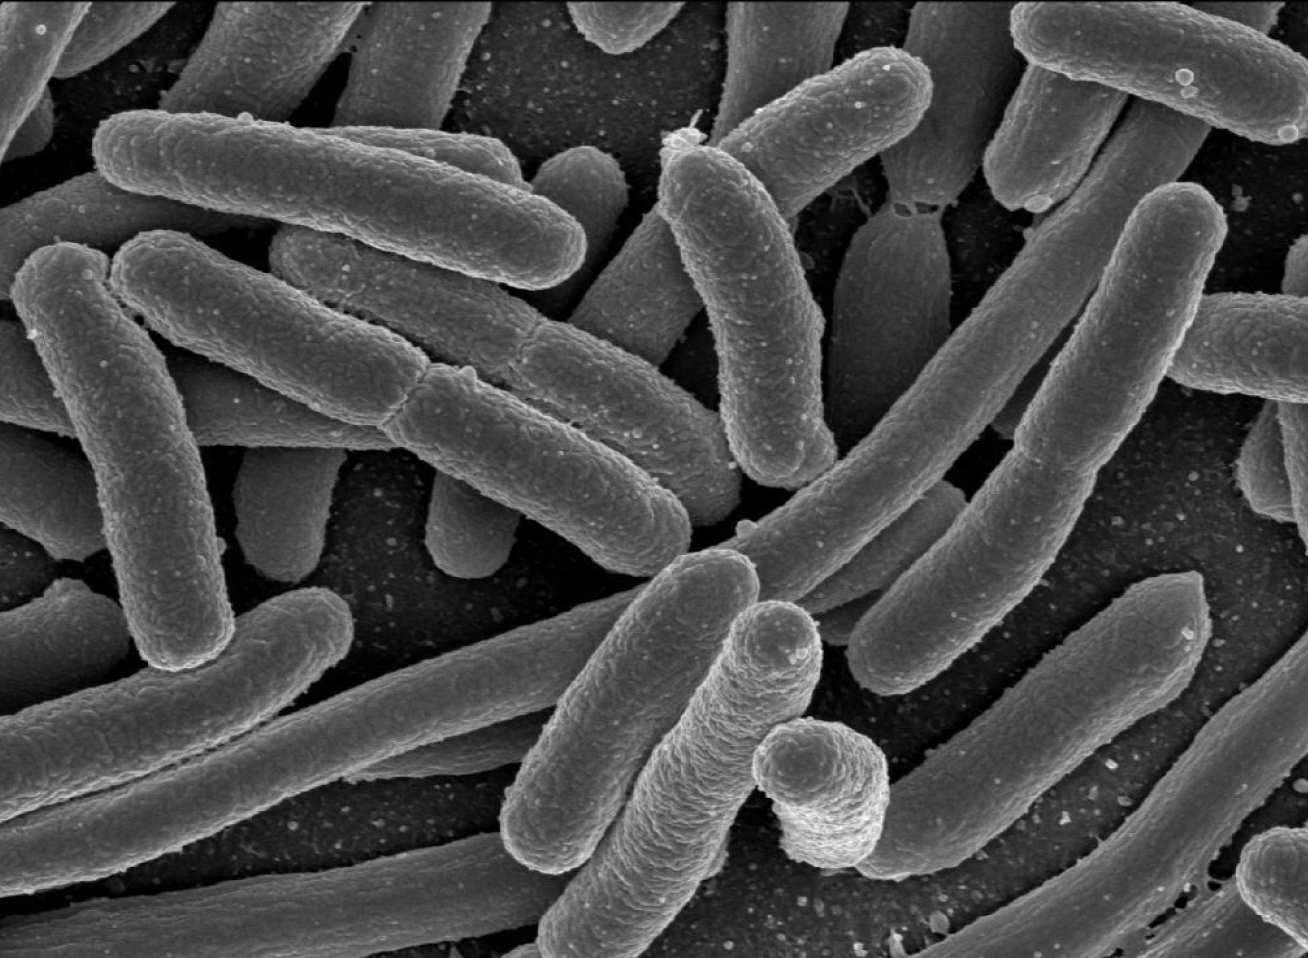 Rod-shaped E.coli bacteria 